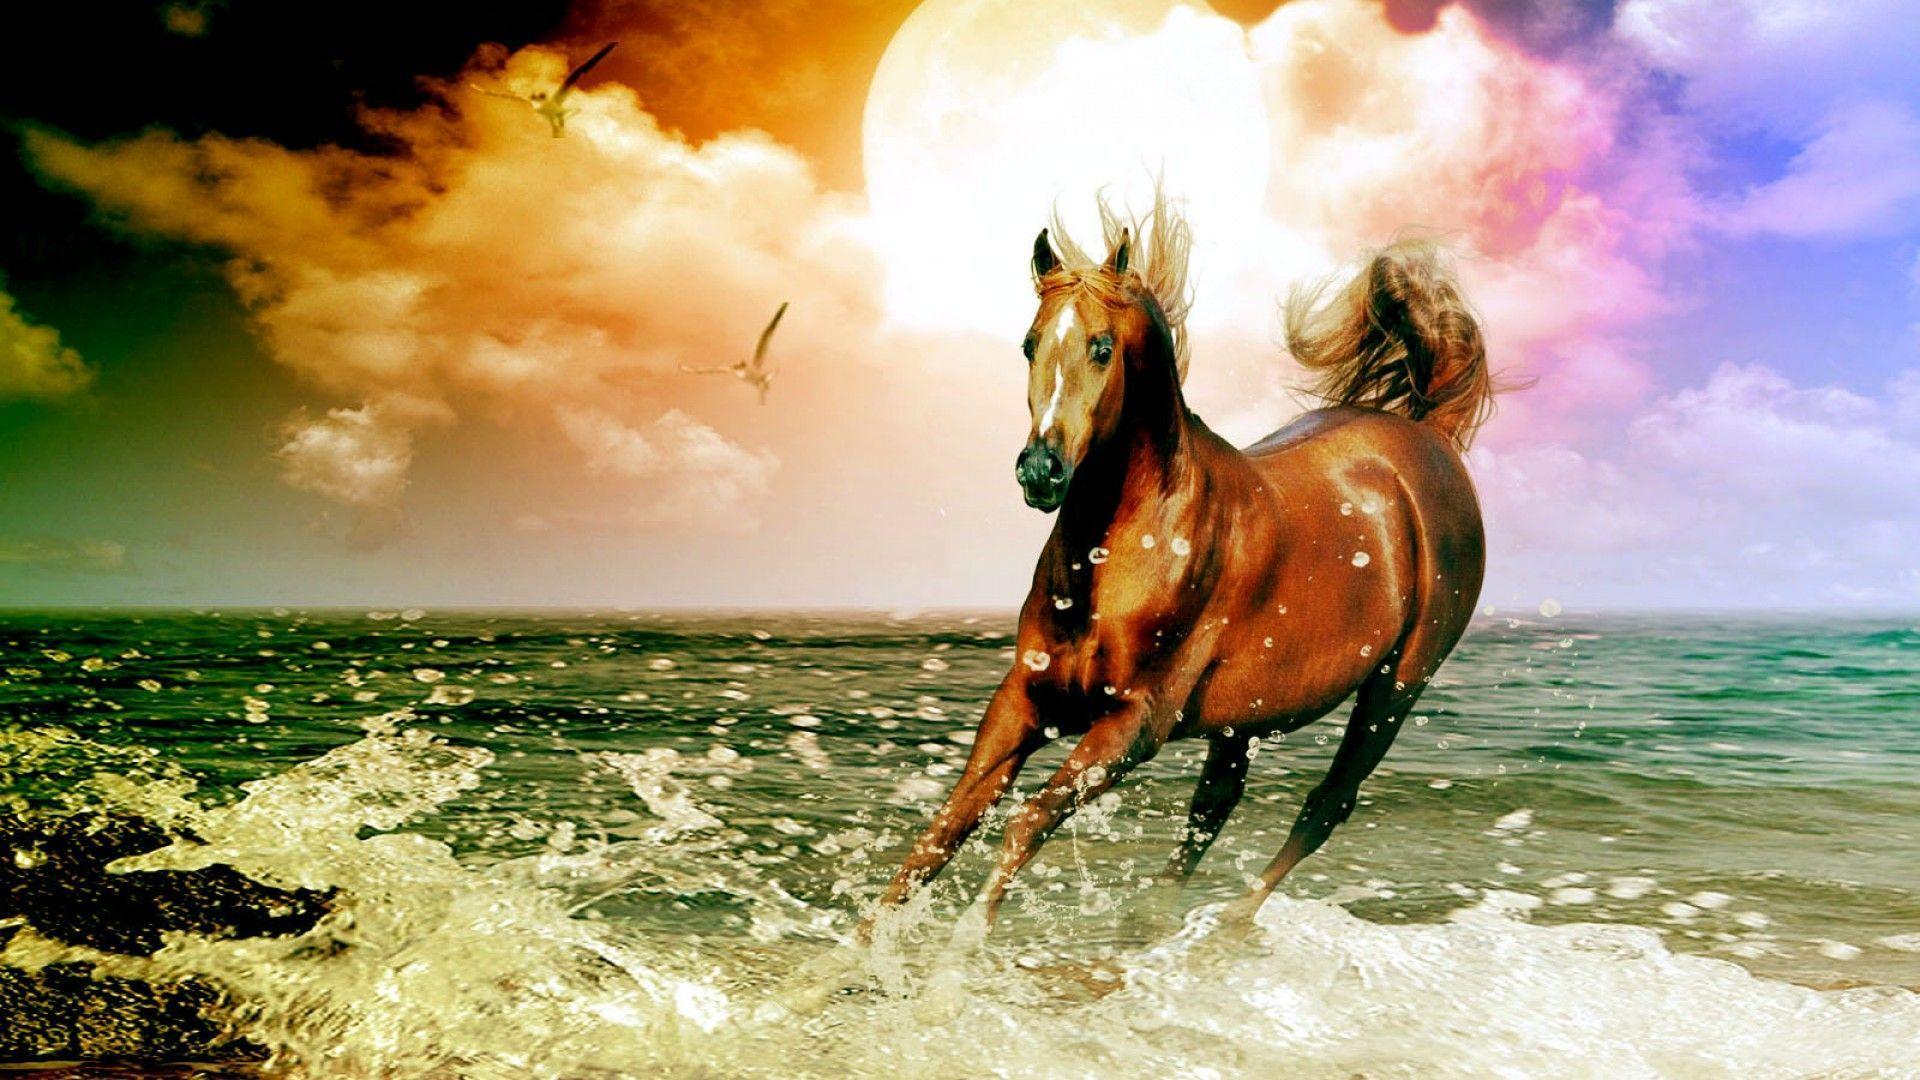 Arabian Horse Beach Desktop Wallpaper. High Quality Wallpaper